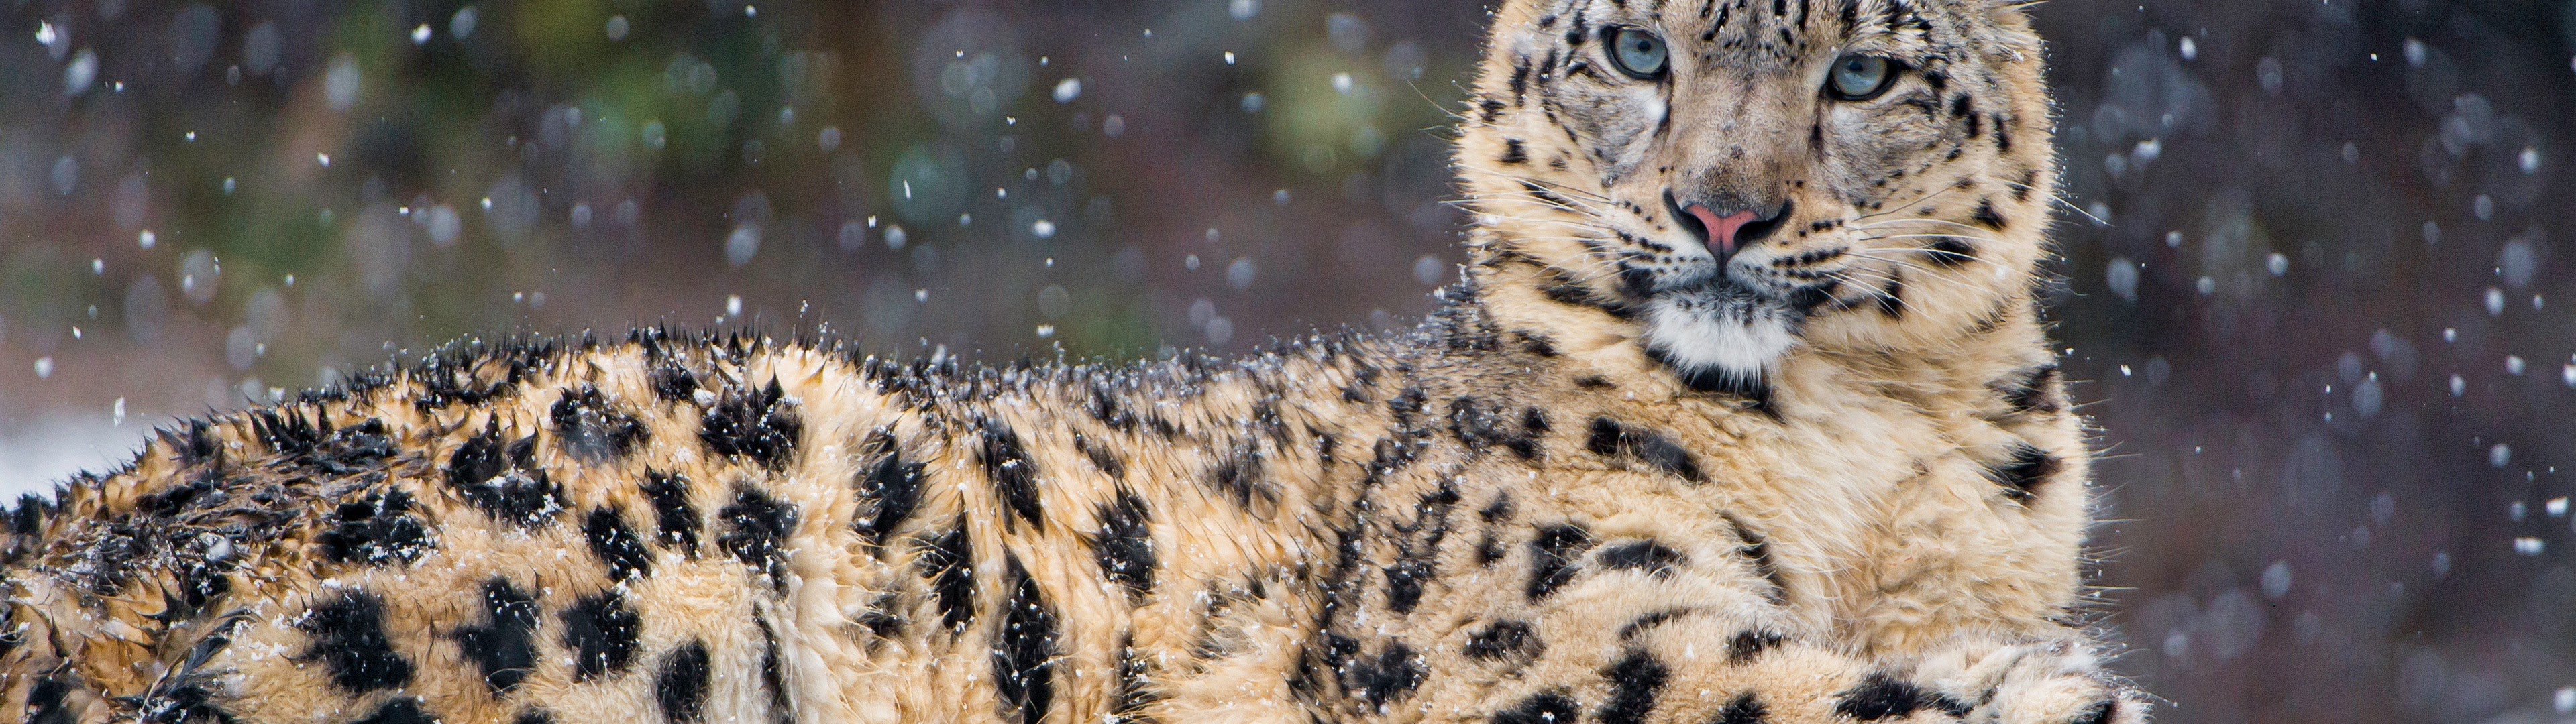 Snow Leopard, 4k, 3840x2160, - Snow Leopard - HD Wallpaper 